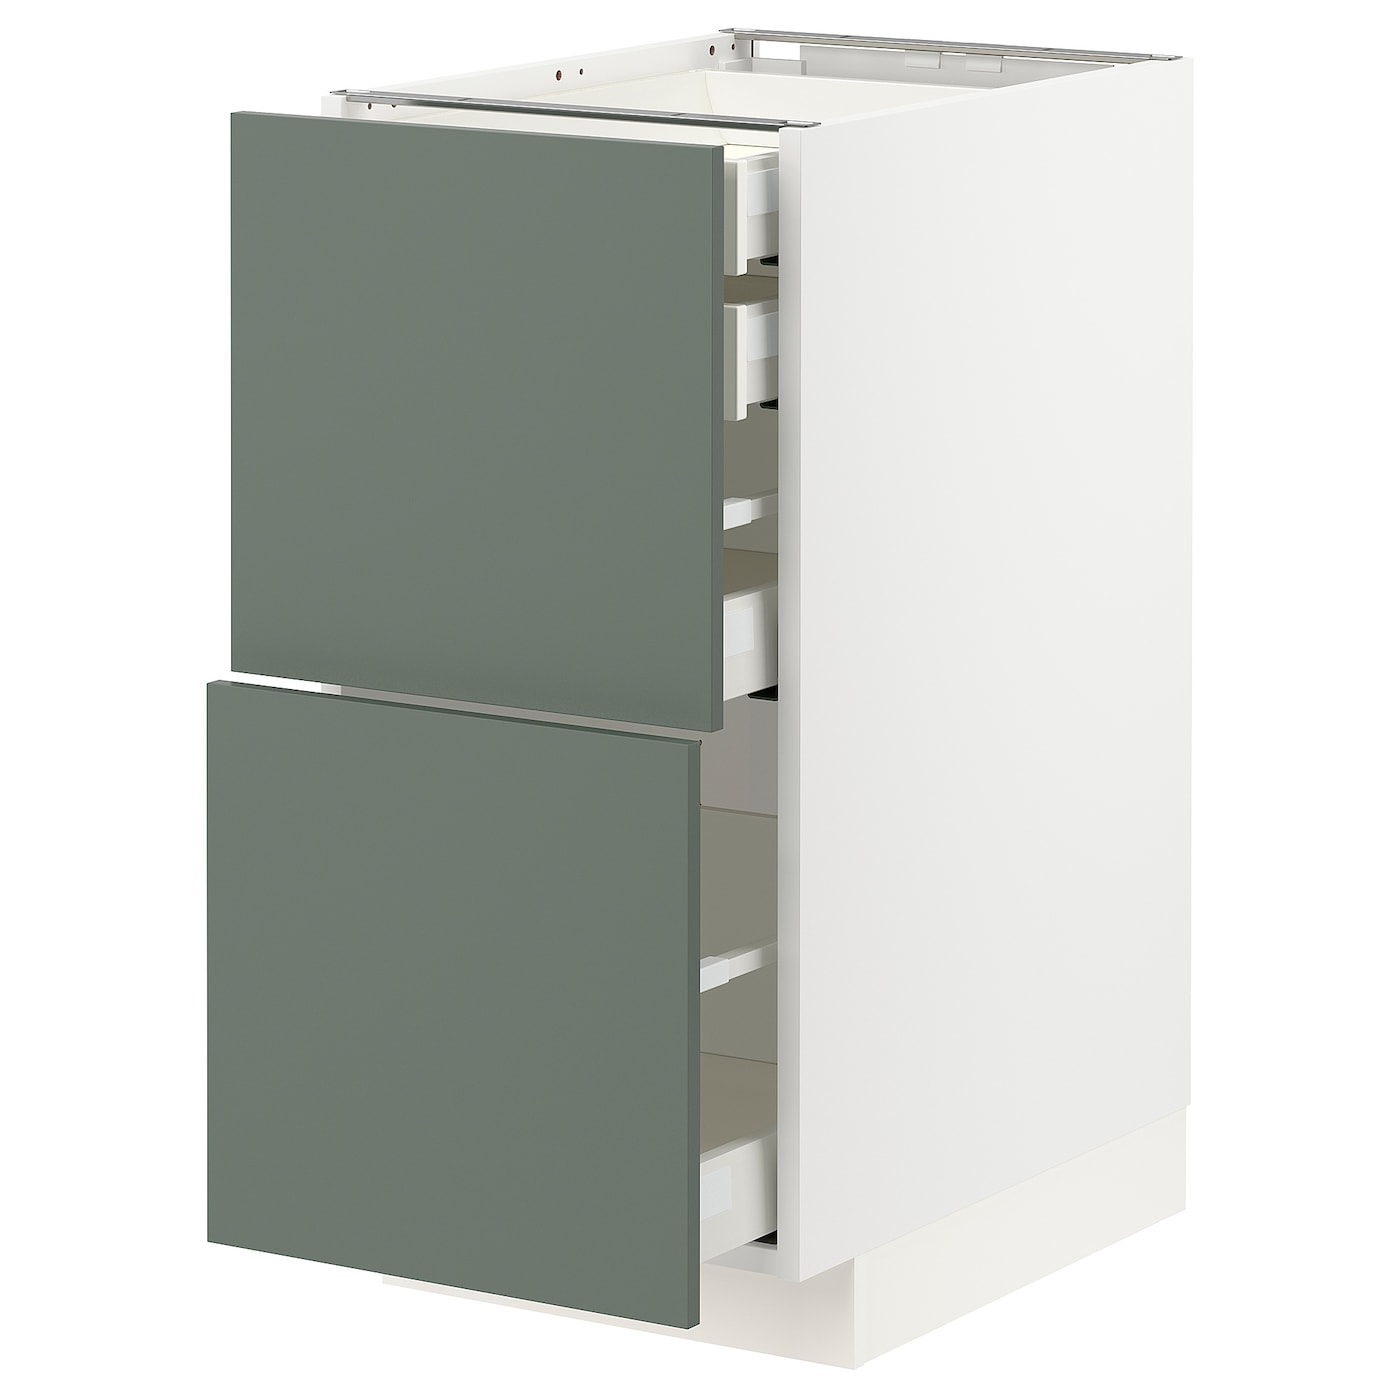 Напольный кухонный шкаф  - IKEA METOD MAXIMERA, 88x61,6x40см, белый/серый, МЕТОД МАКСИМЕРА ИКЕА